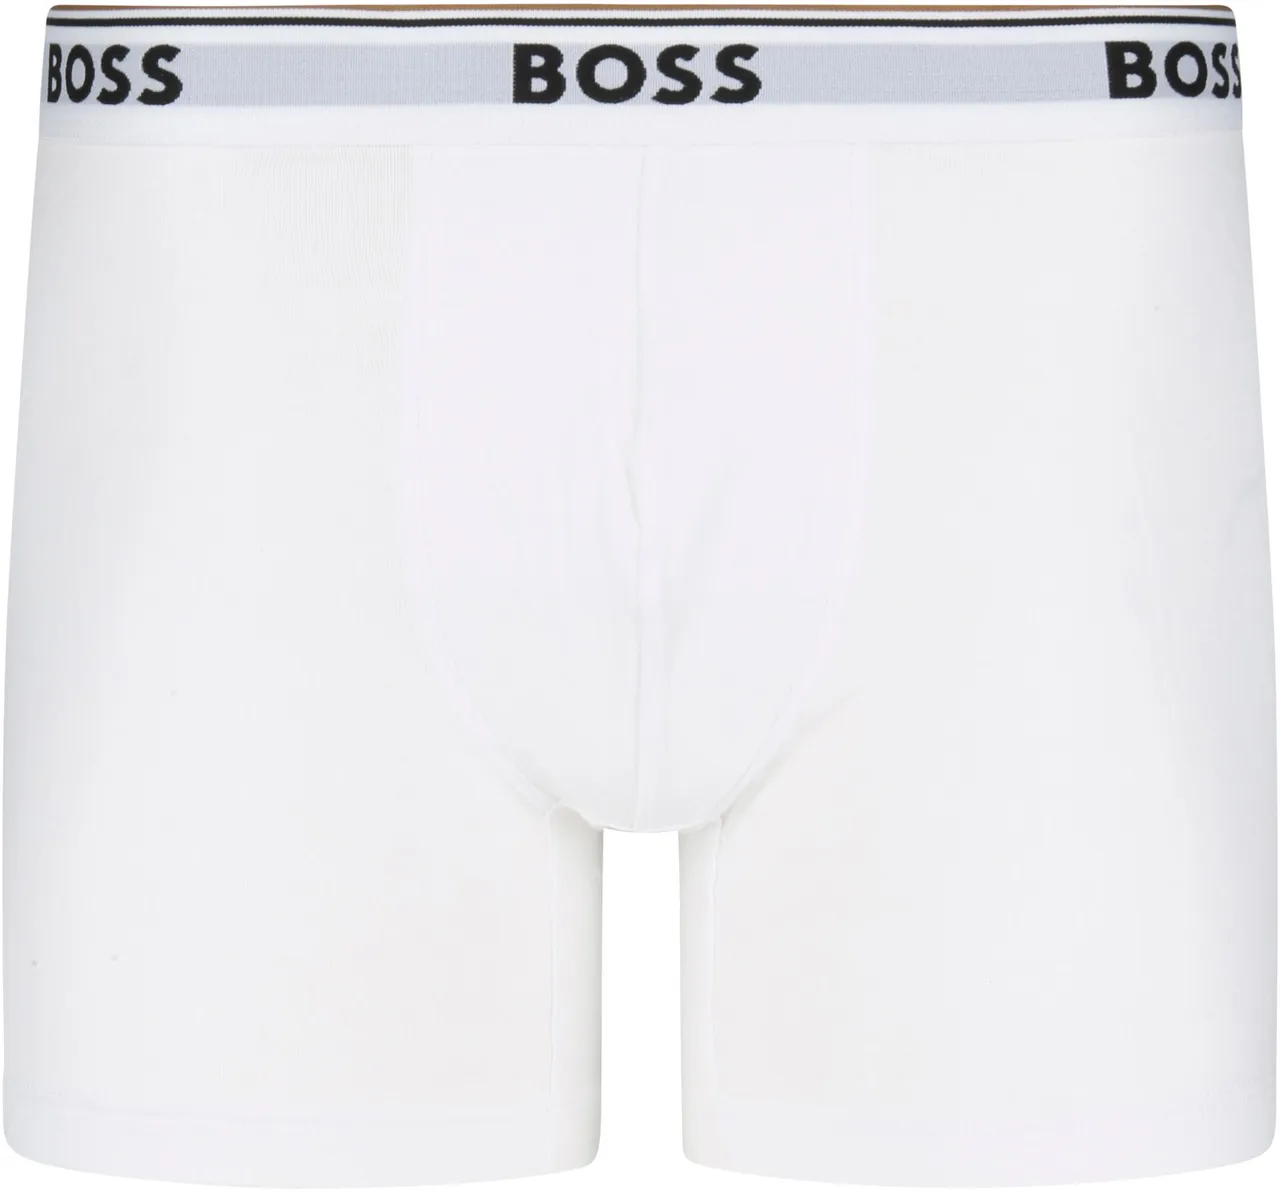 BOSS Boxer Shorts Power 3-Pack 999  Grey Multicolour Black White